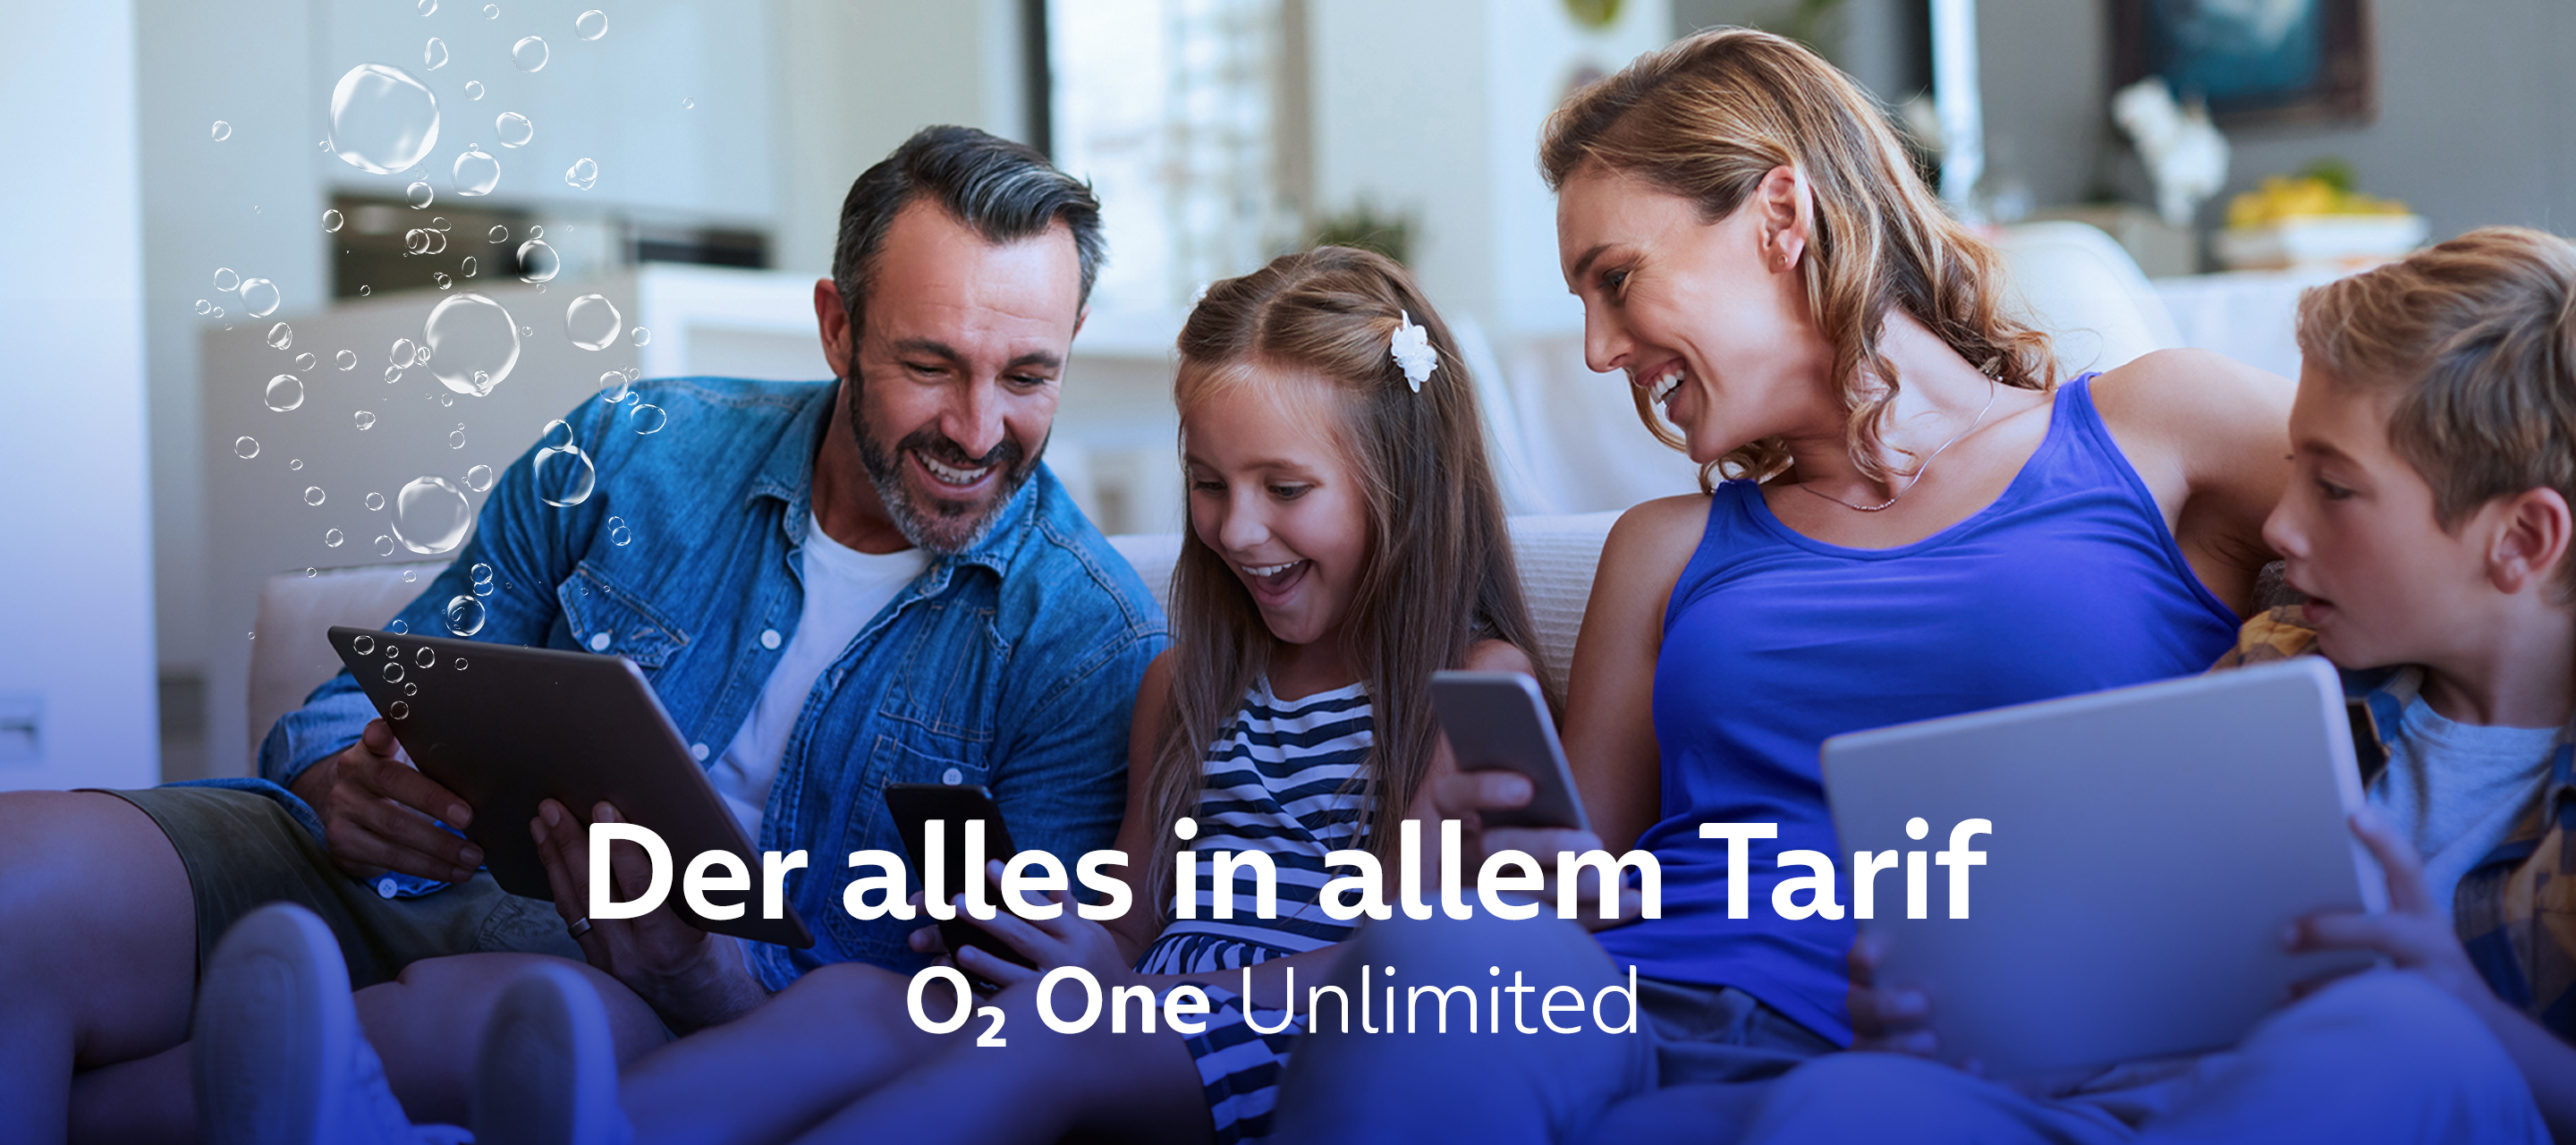 Der neue O₂ One Unlimited - der alles in allem Tarif